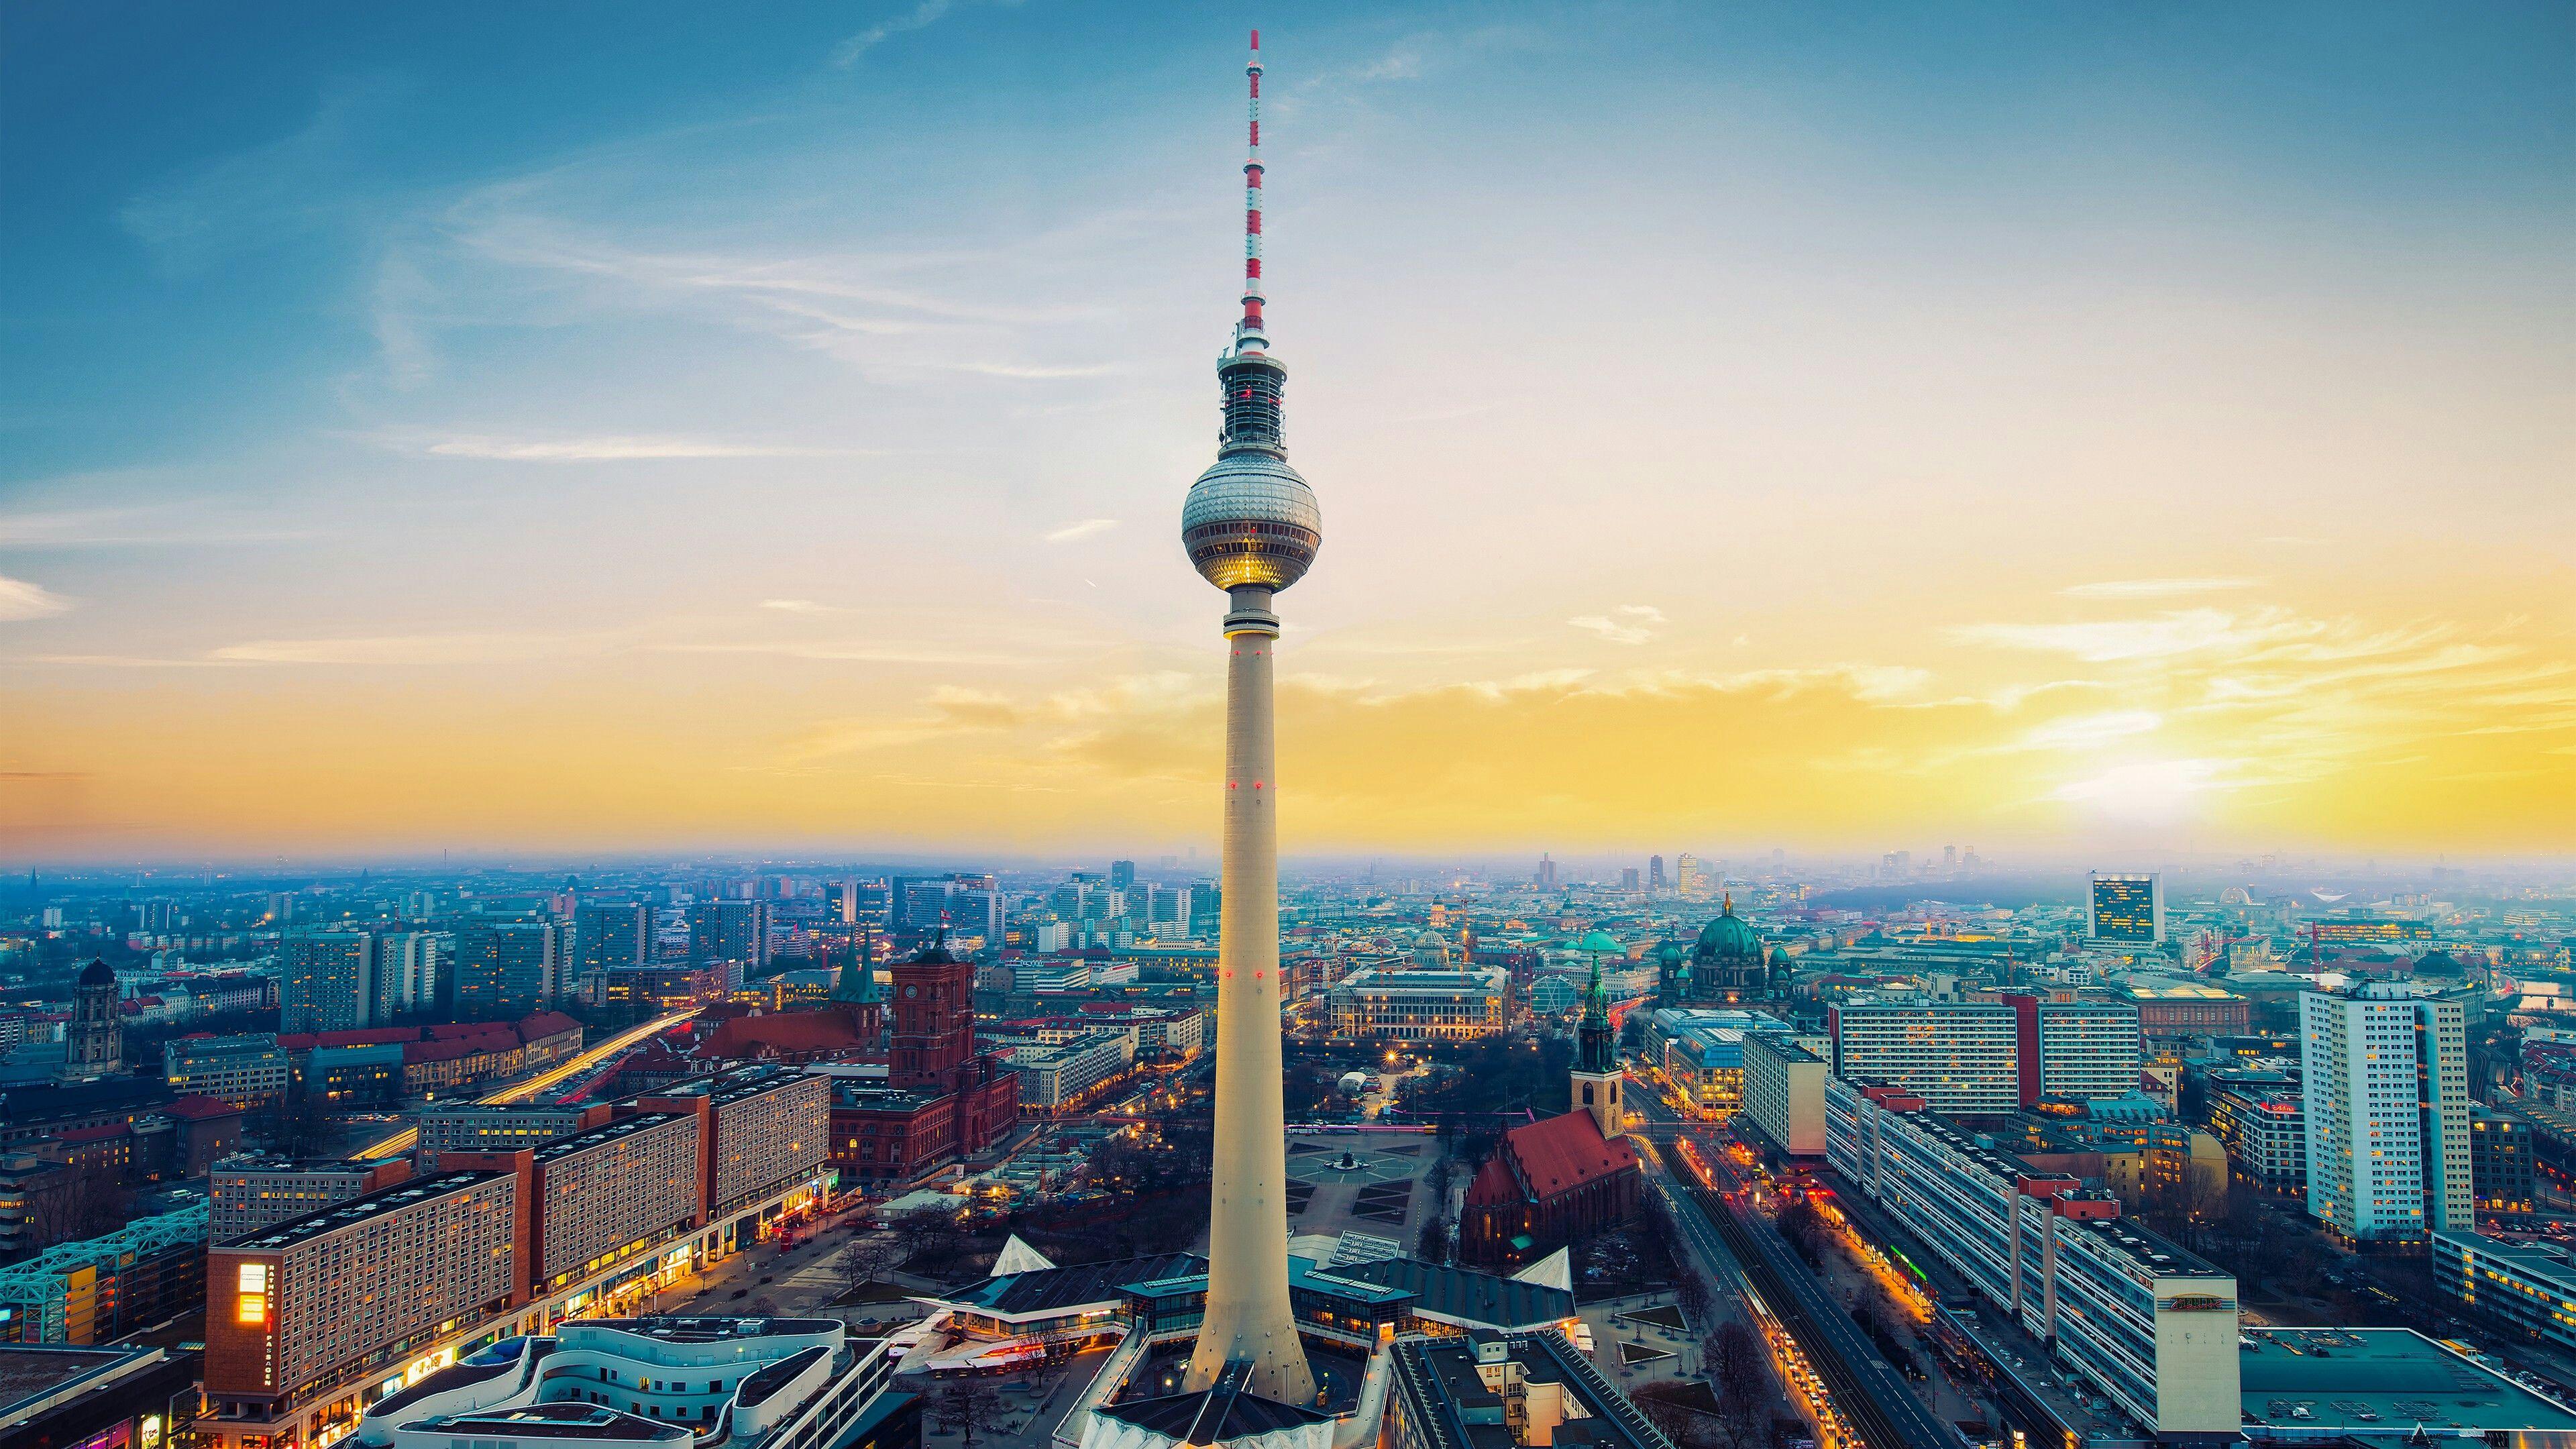 3840x2160 Tháp truyền hình Fernsehturm ở Berlin Hình nền UltraHD 4K.  Hình nền